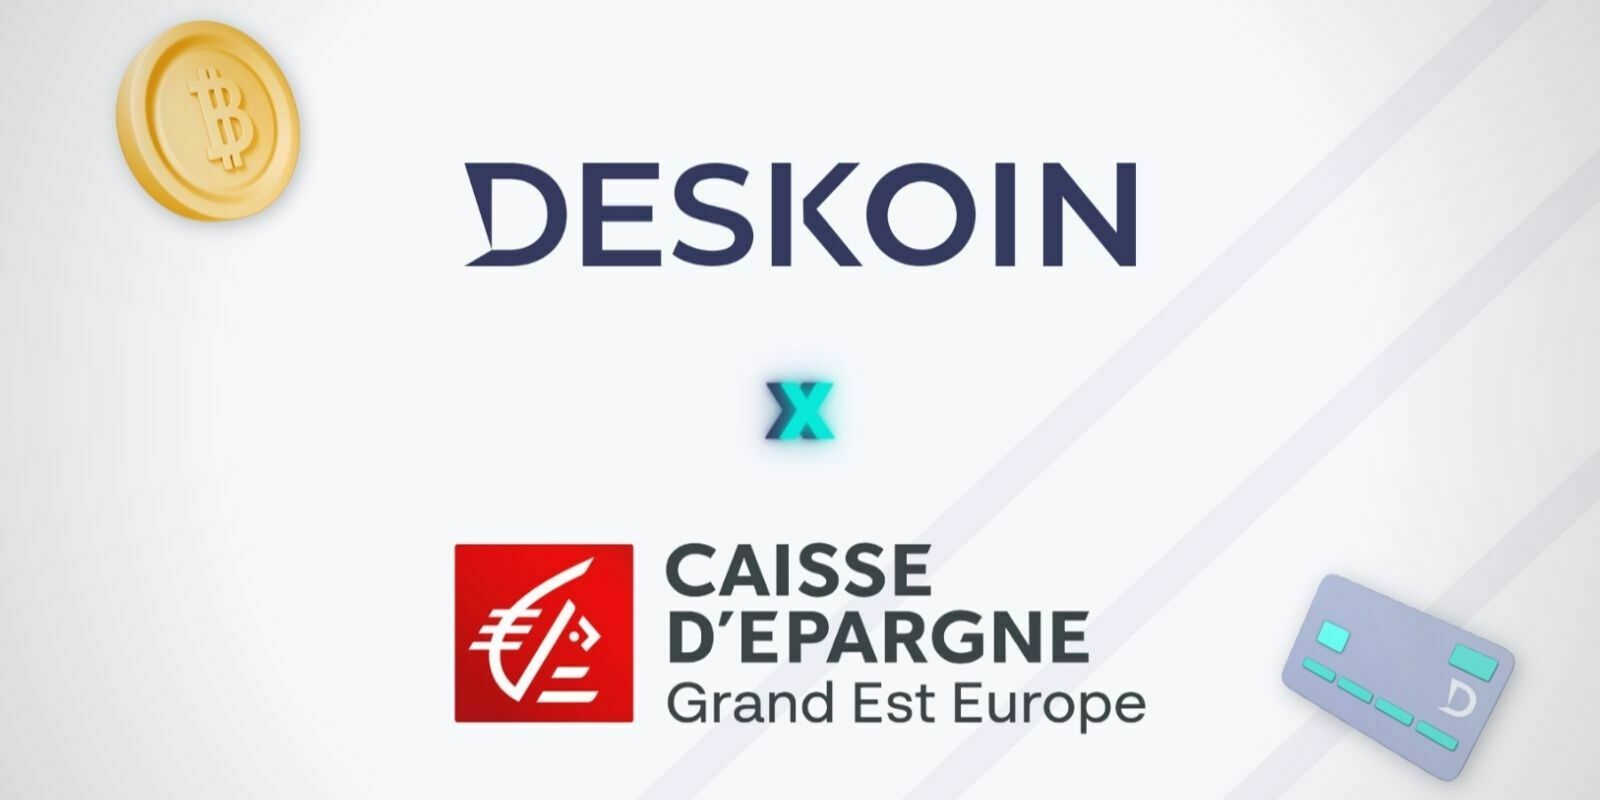 Deskoin signe un accord avec la Caisse d’Épargne Grand Est Europe pour disrupter l'achat de cryptomonnaies en France